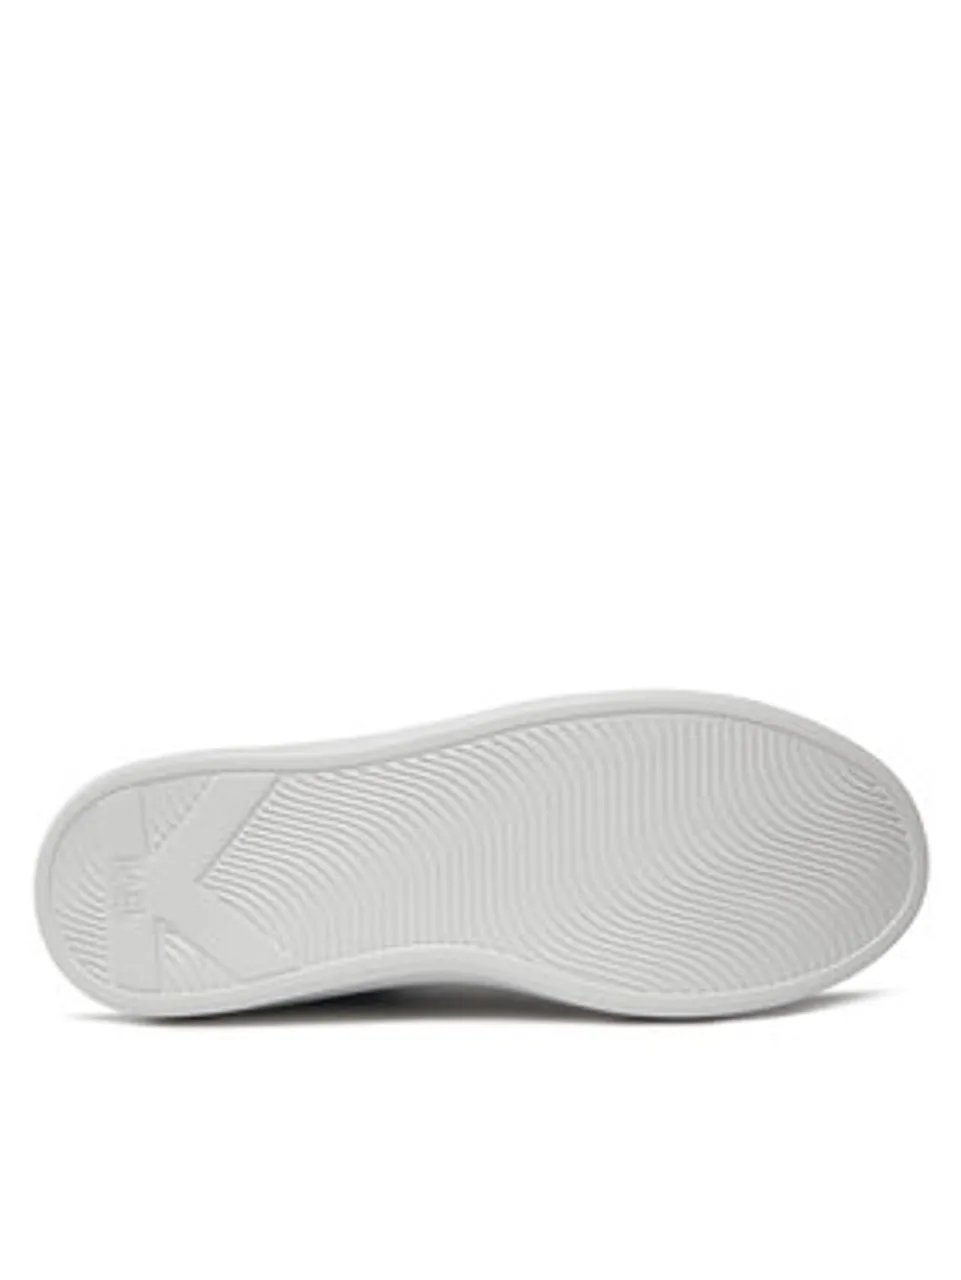 KARL LAGERFELD Sneakers KL52574 Weiß